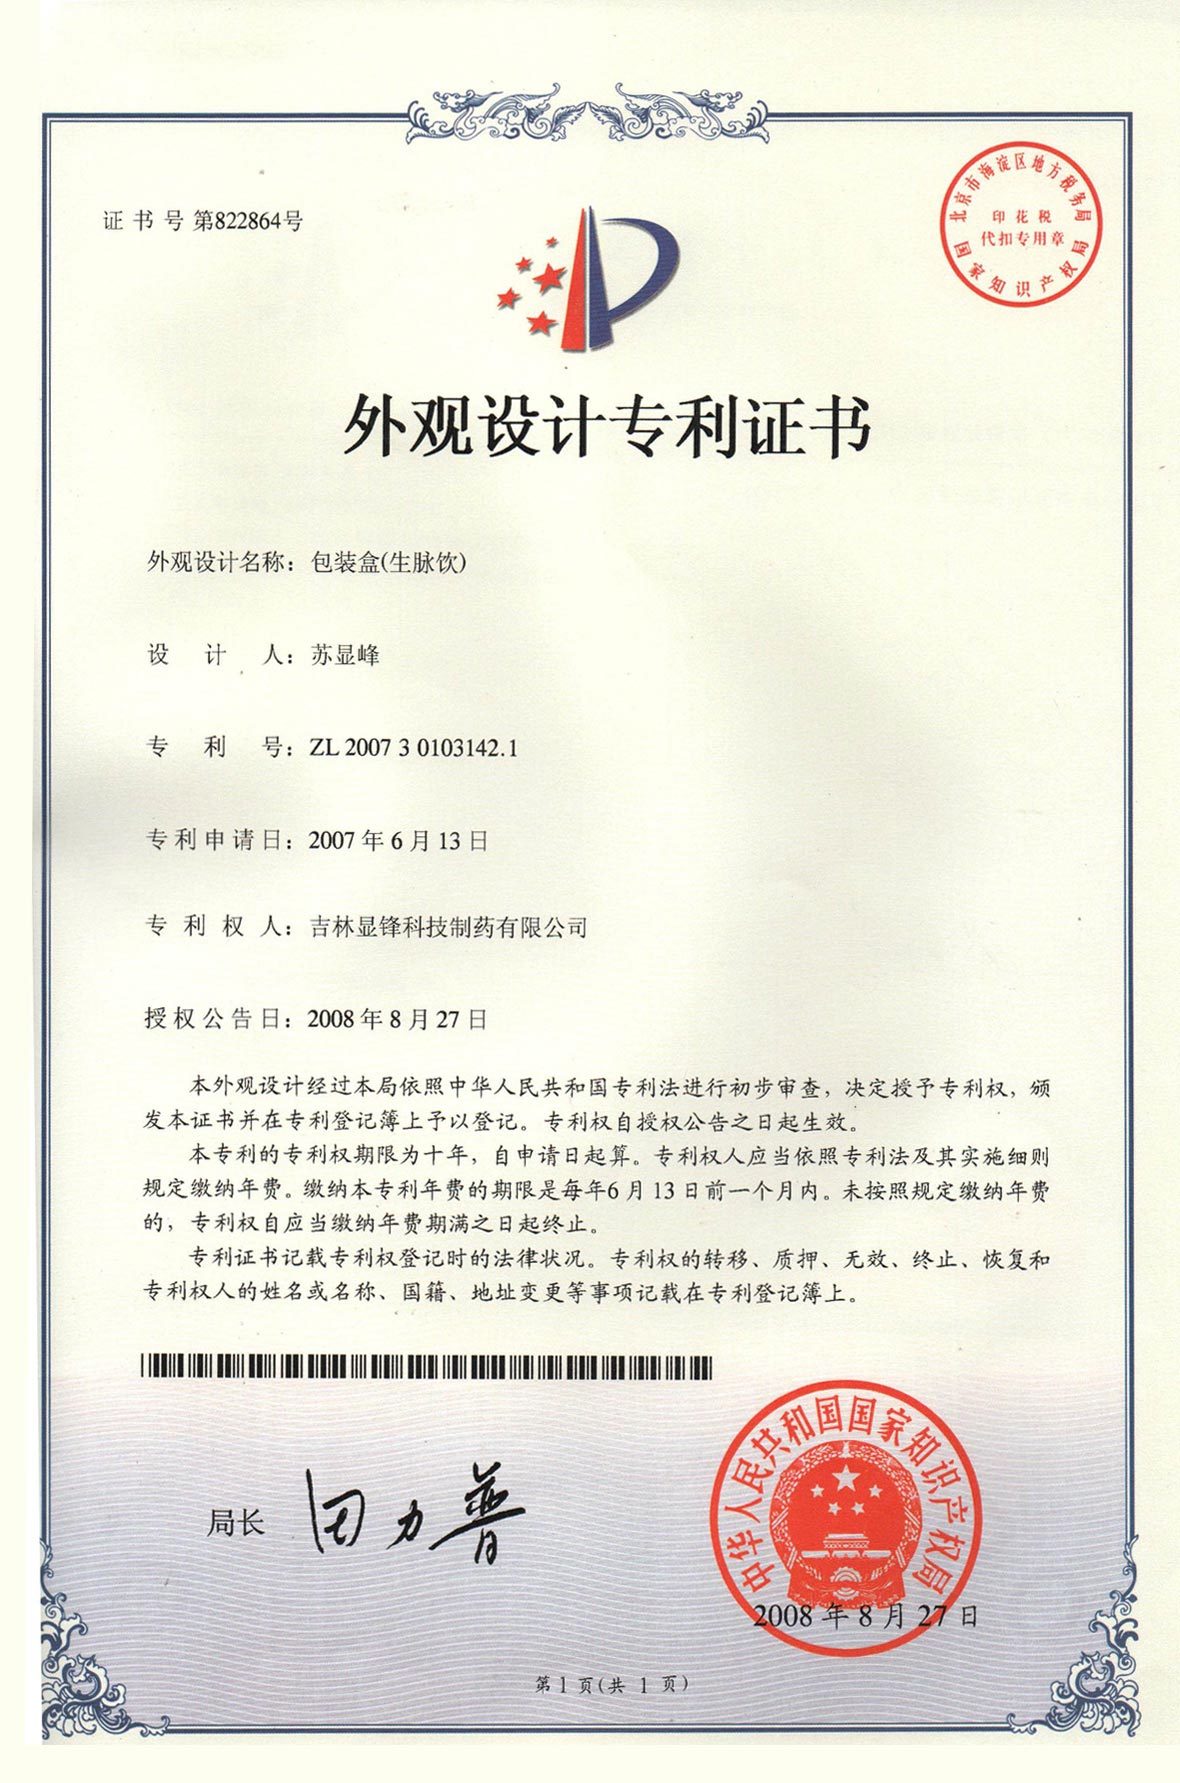 生脈飲包裝設計專利證書